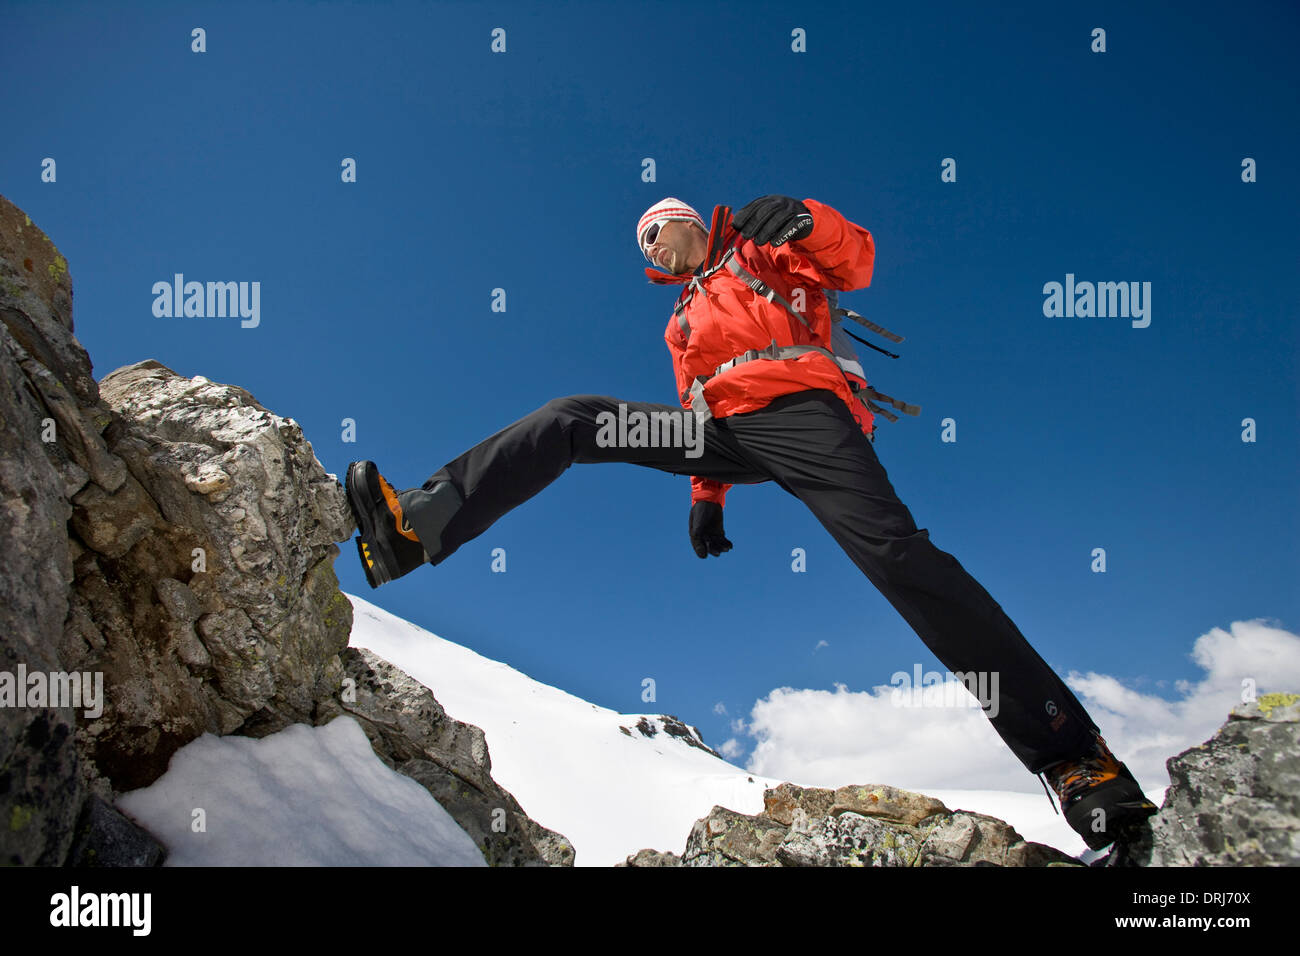 Man climbs in the rock, Mann klettert am Felsen Stock Photo